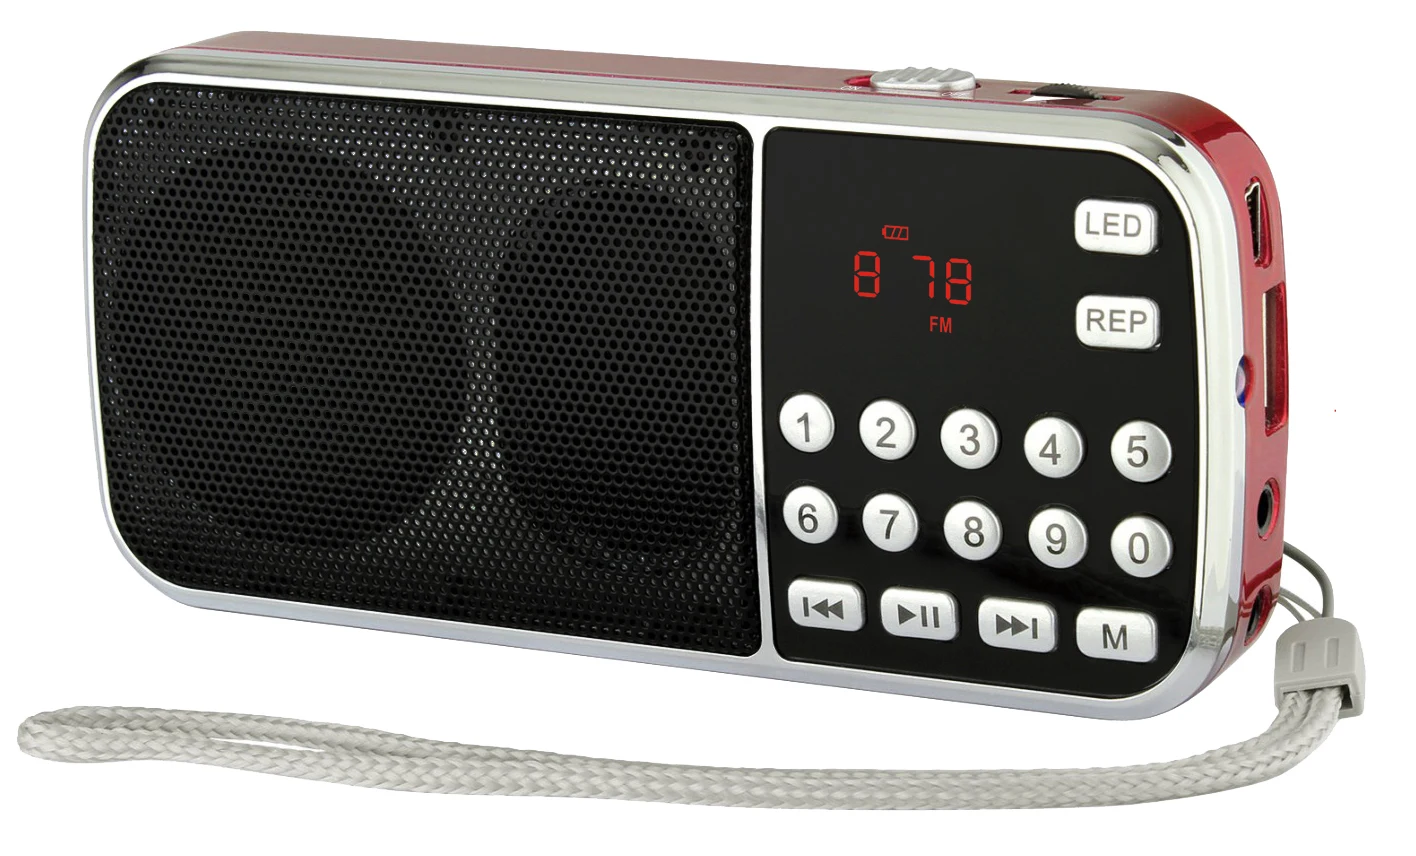 Радио фм мп3. Mini Portable Speaker l-088am. Радиоприемник fm 88k. L-088am Dual Band аккумуляторная портативная Mini am fm-радиоприемник.